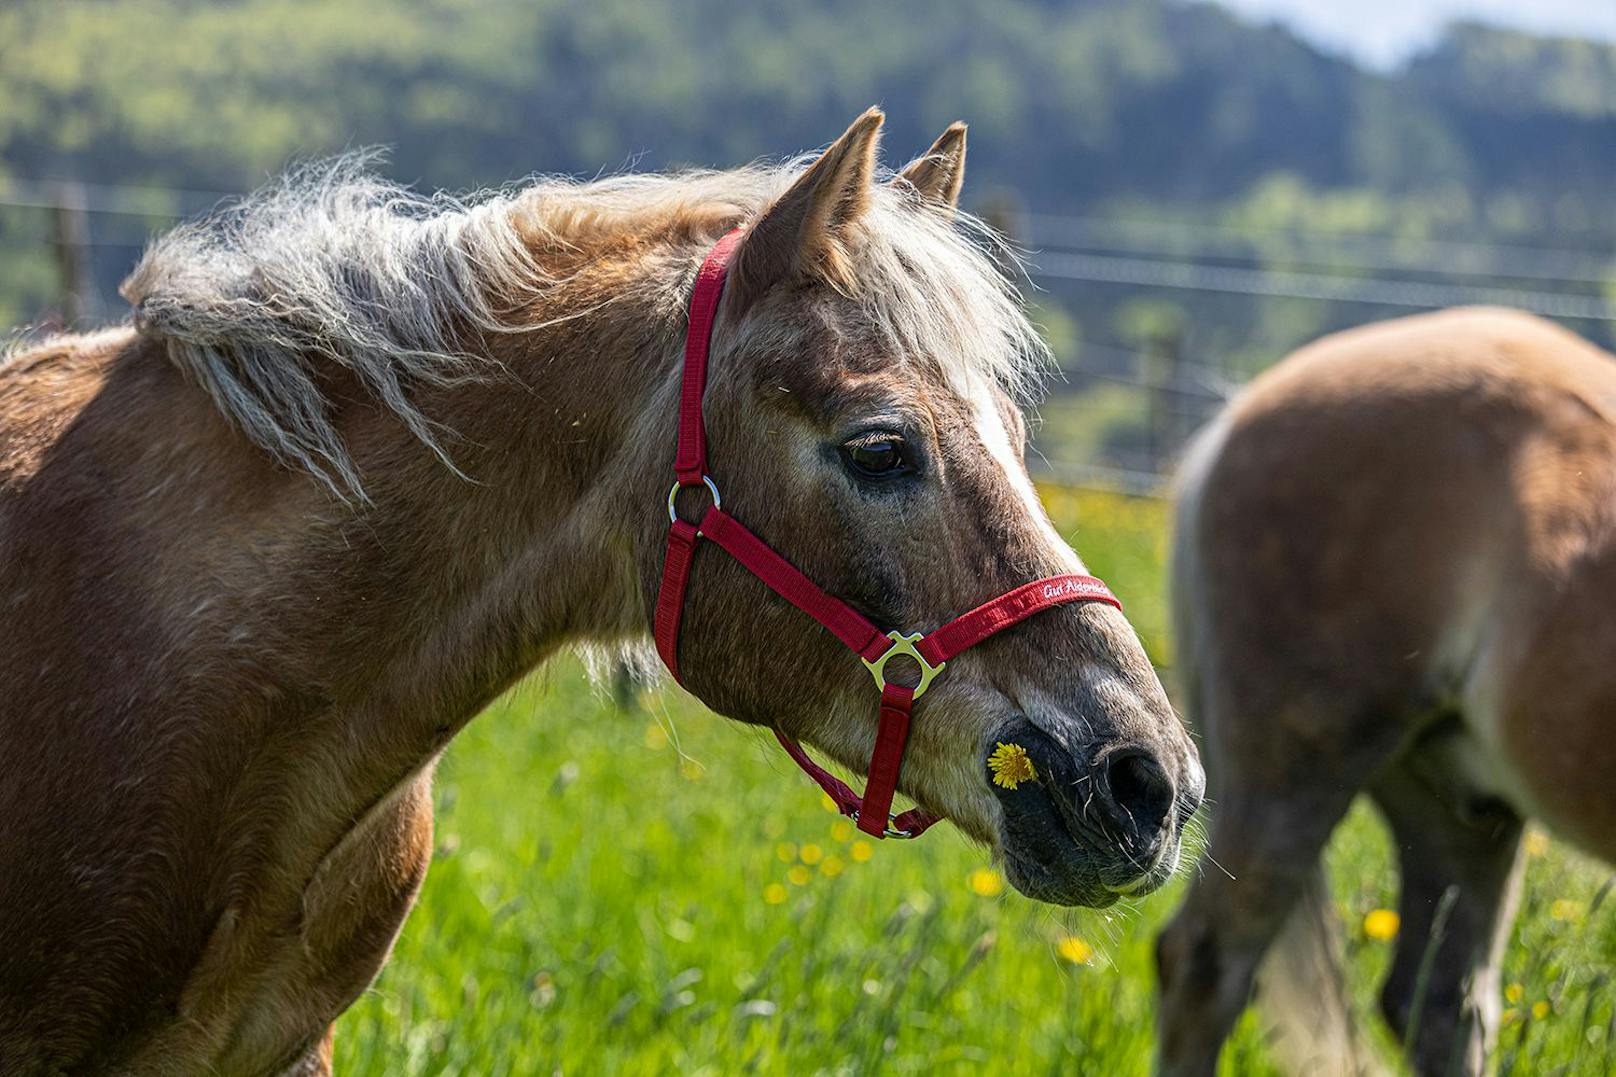 Über 770 Pferde leben auf Gut Aiderbichl. Nanuk und Willow sind ab sofort zwei von ihnen. Mit 30 bzw. 27 Jahren zählen Sie zu den Senioren – keine Seltenheit auf Gut Aiderbichl.